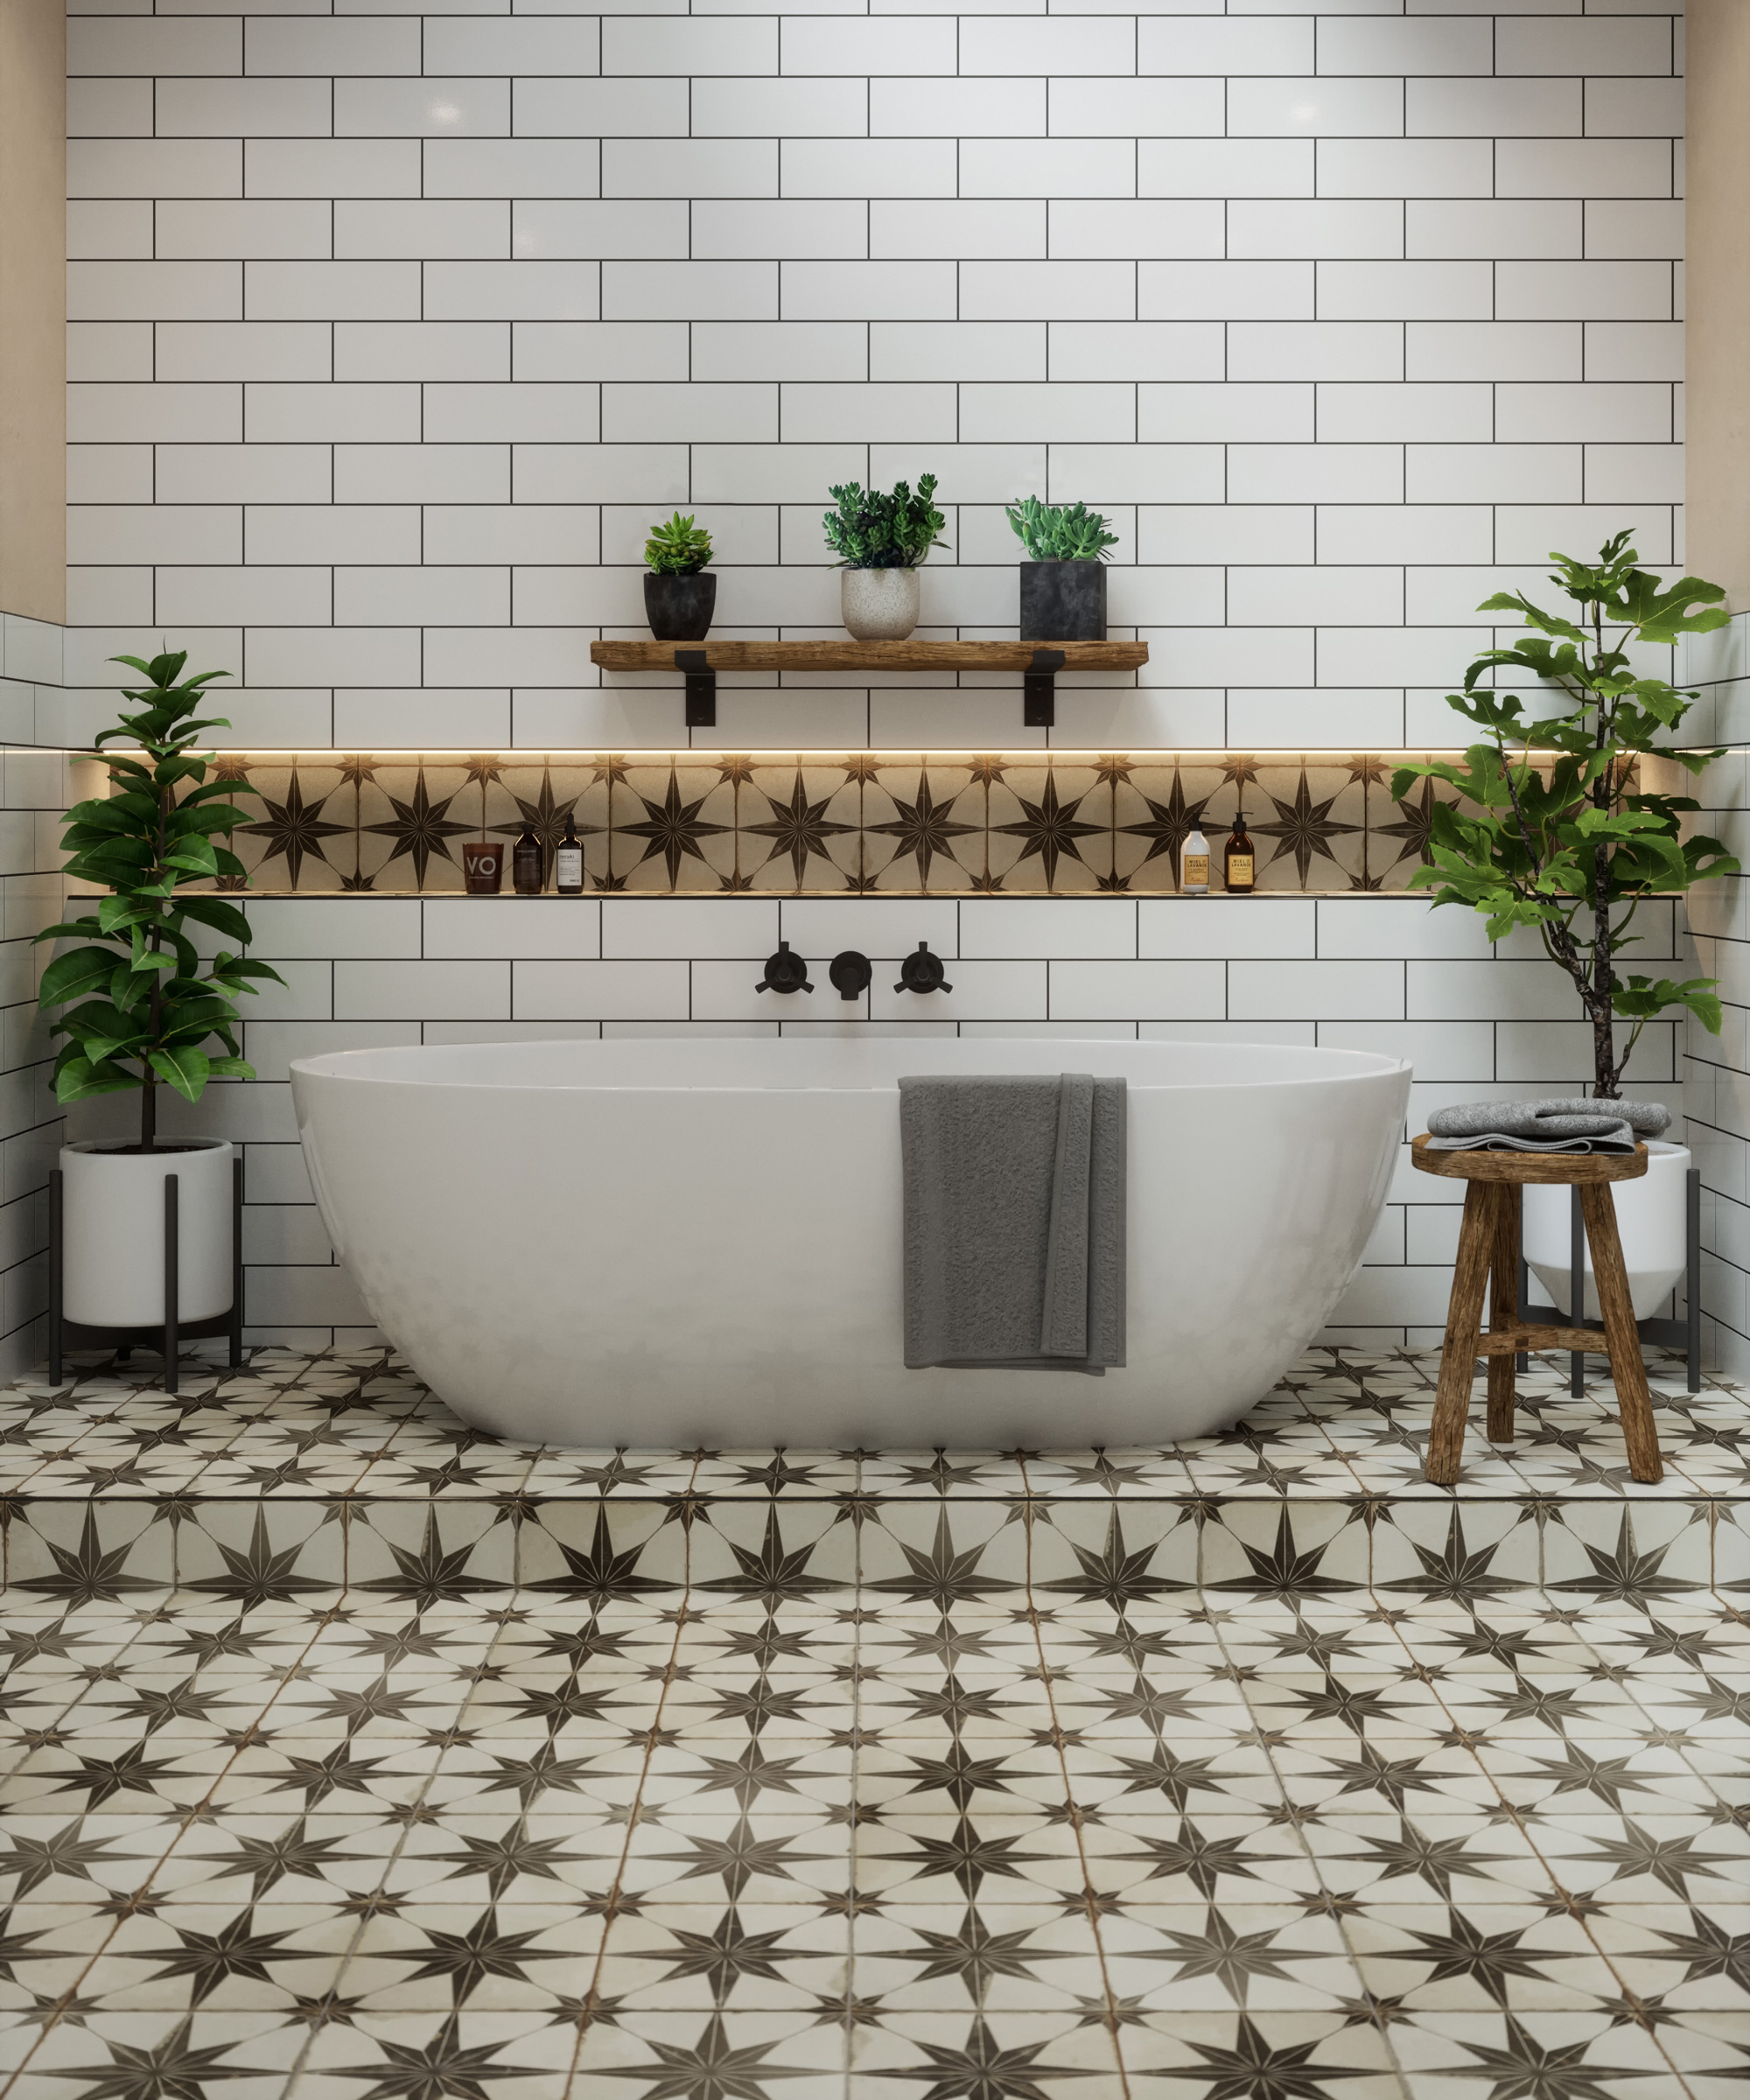 Bathroom Tile Ideas 32 New Looks To, Vintage Bathroom Floor Tile Patterns